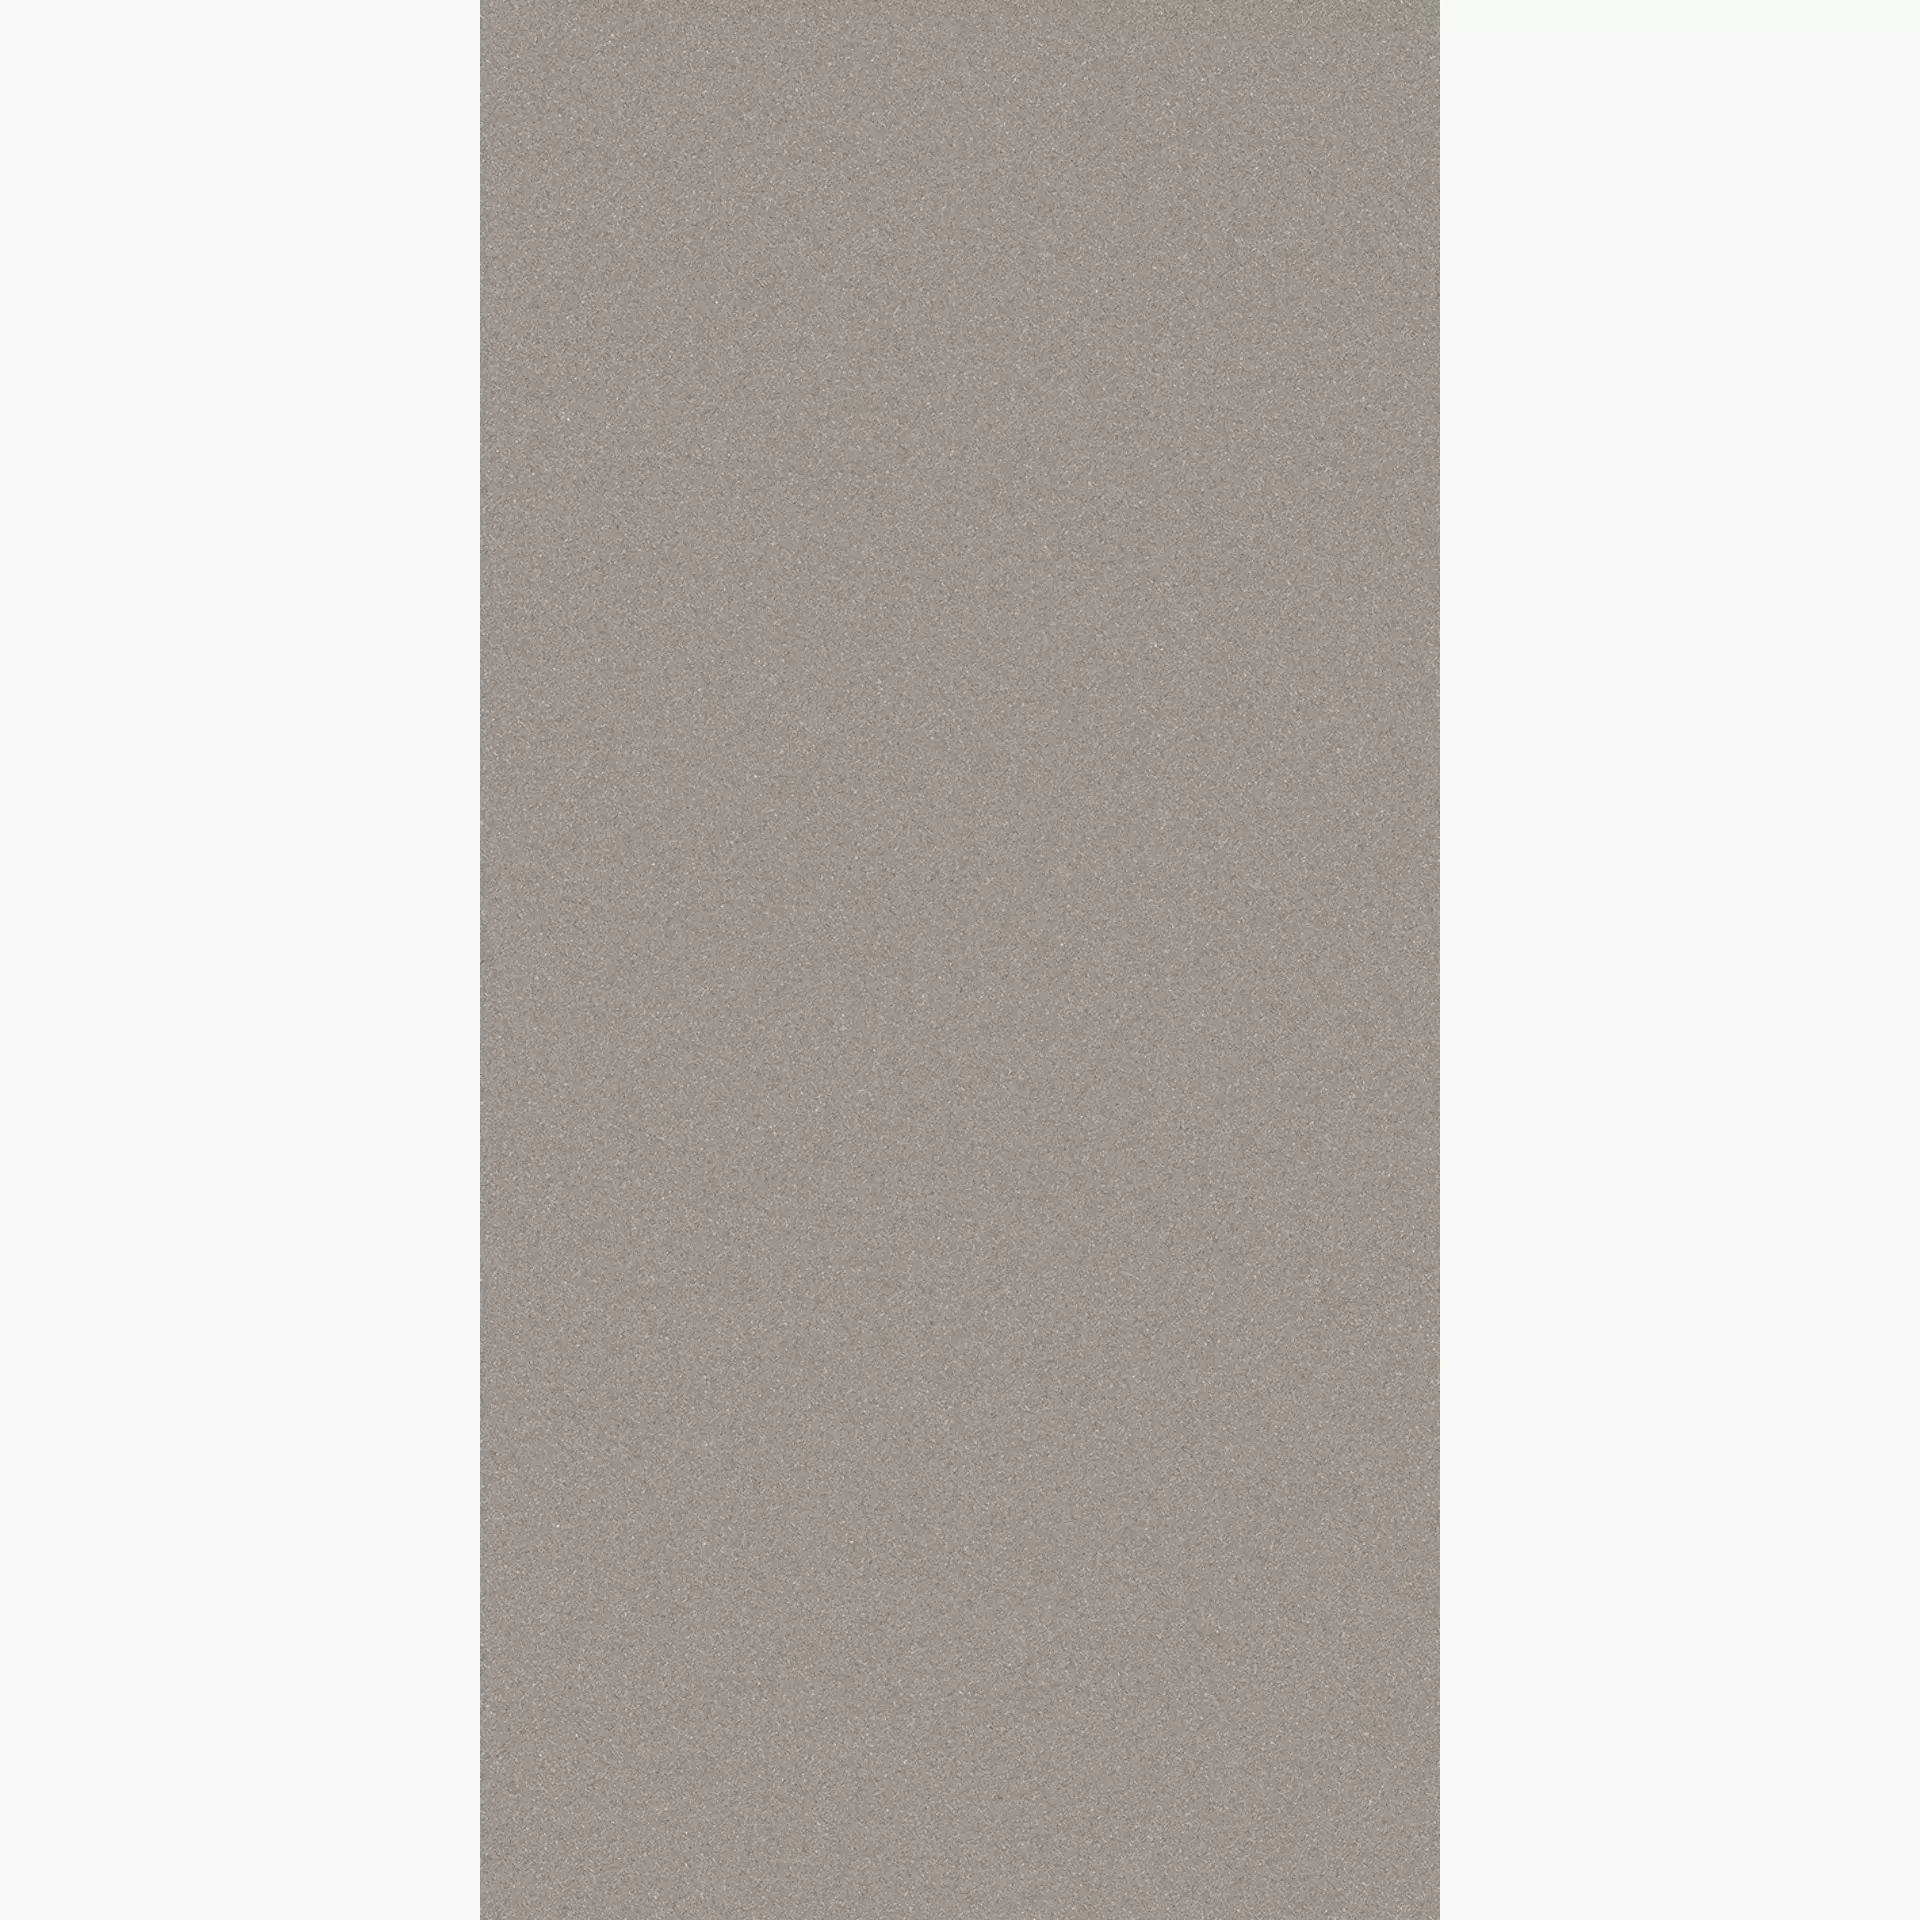 Wandfliese,Bodenfliese Villeroy & Boch Pure Line 2.0 Cement Grey Matt Cement Grey 2751-UL61 matt 60x120cm rektifiziert 12mm